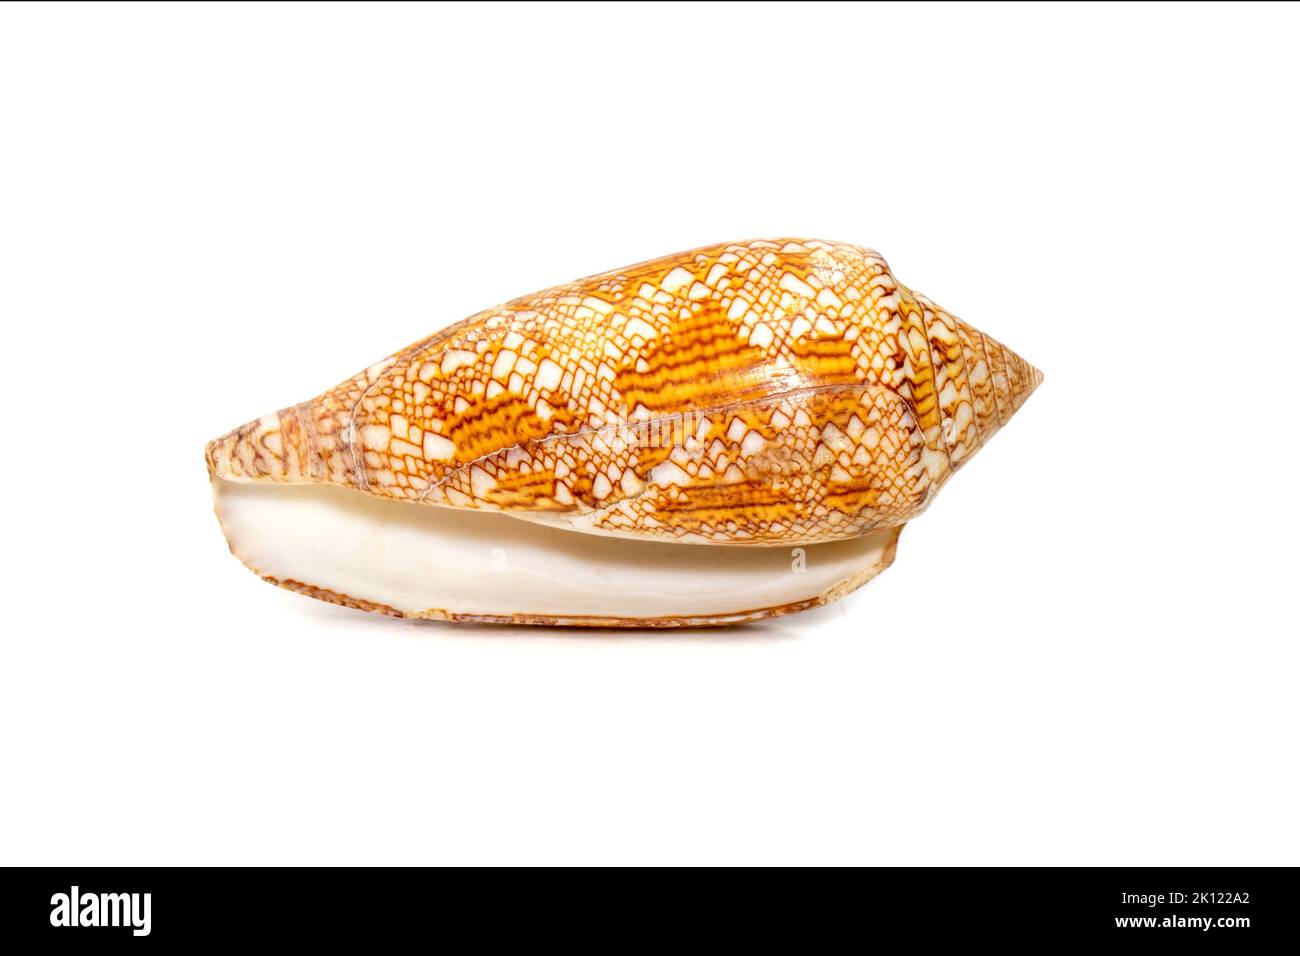 Image de conus omaria patonganus coquillages de mer est une espèce d'escargot de mer, un mollusque de gastropode marine dans la famille des Conidae, les escargots de cône et leurs alles Banque D'Images